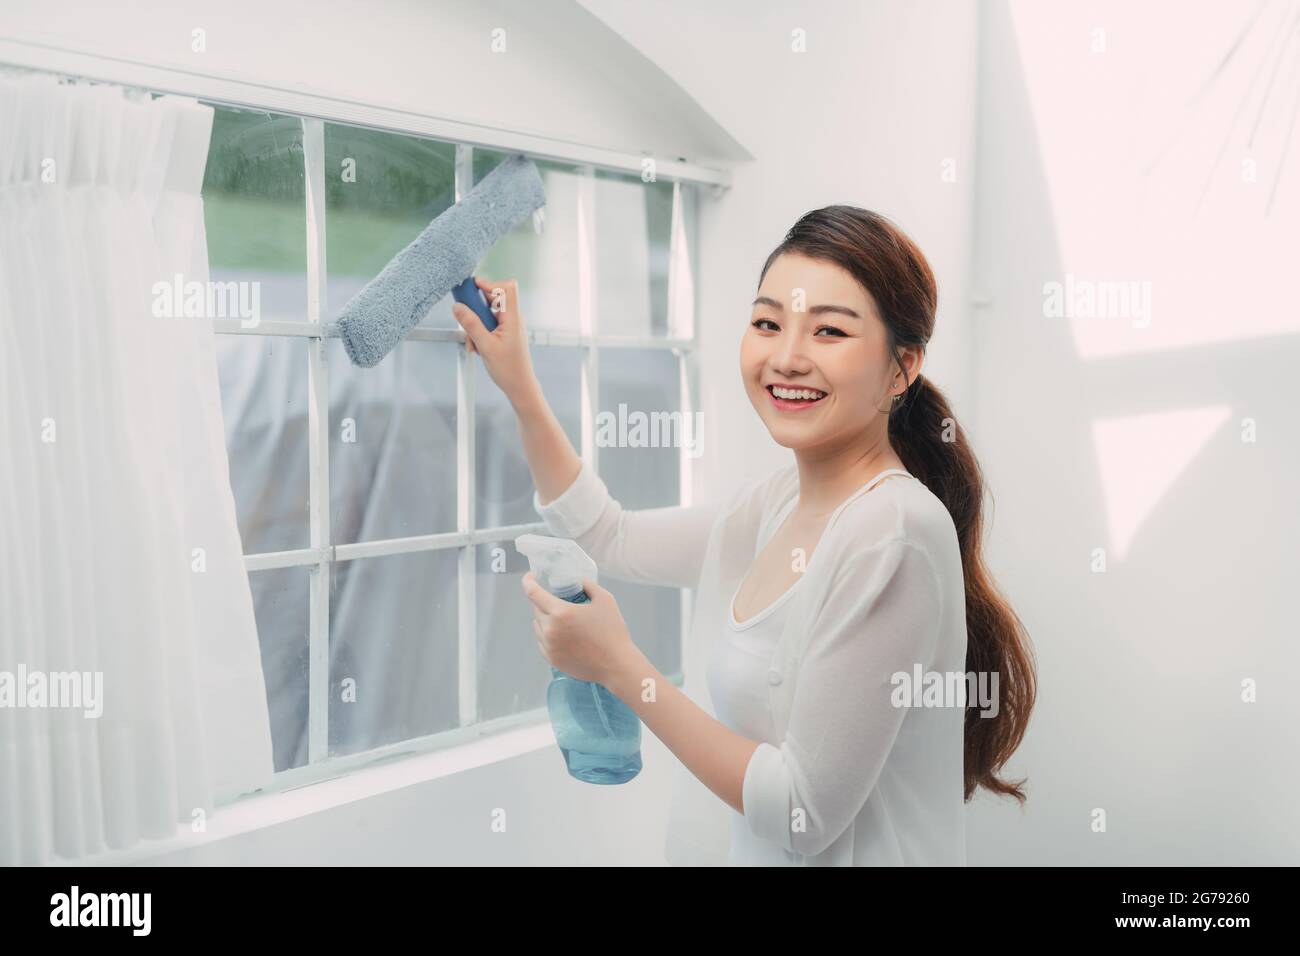 Junge lächelnde Frau putzt Fenster in einem Haus, macht Hausarbeiten. Stockfoto